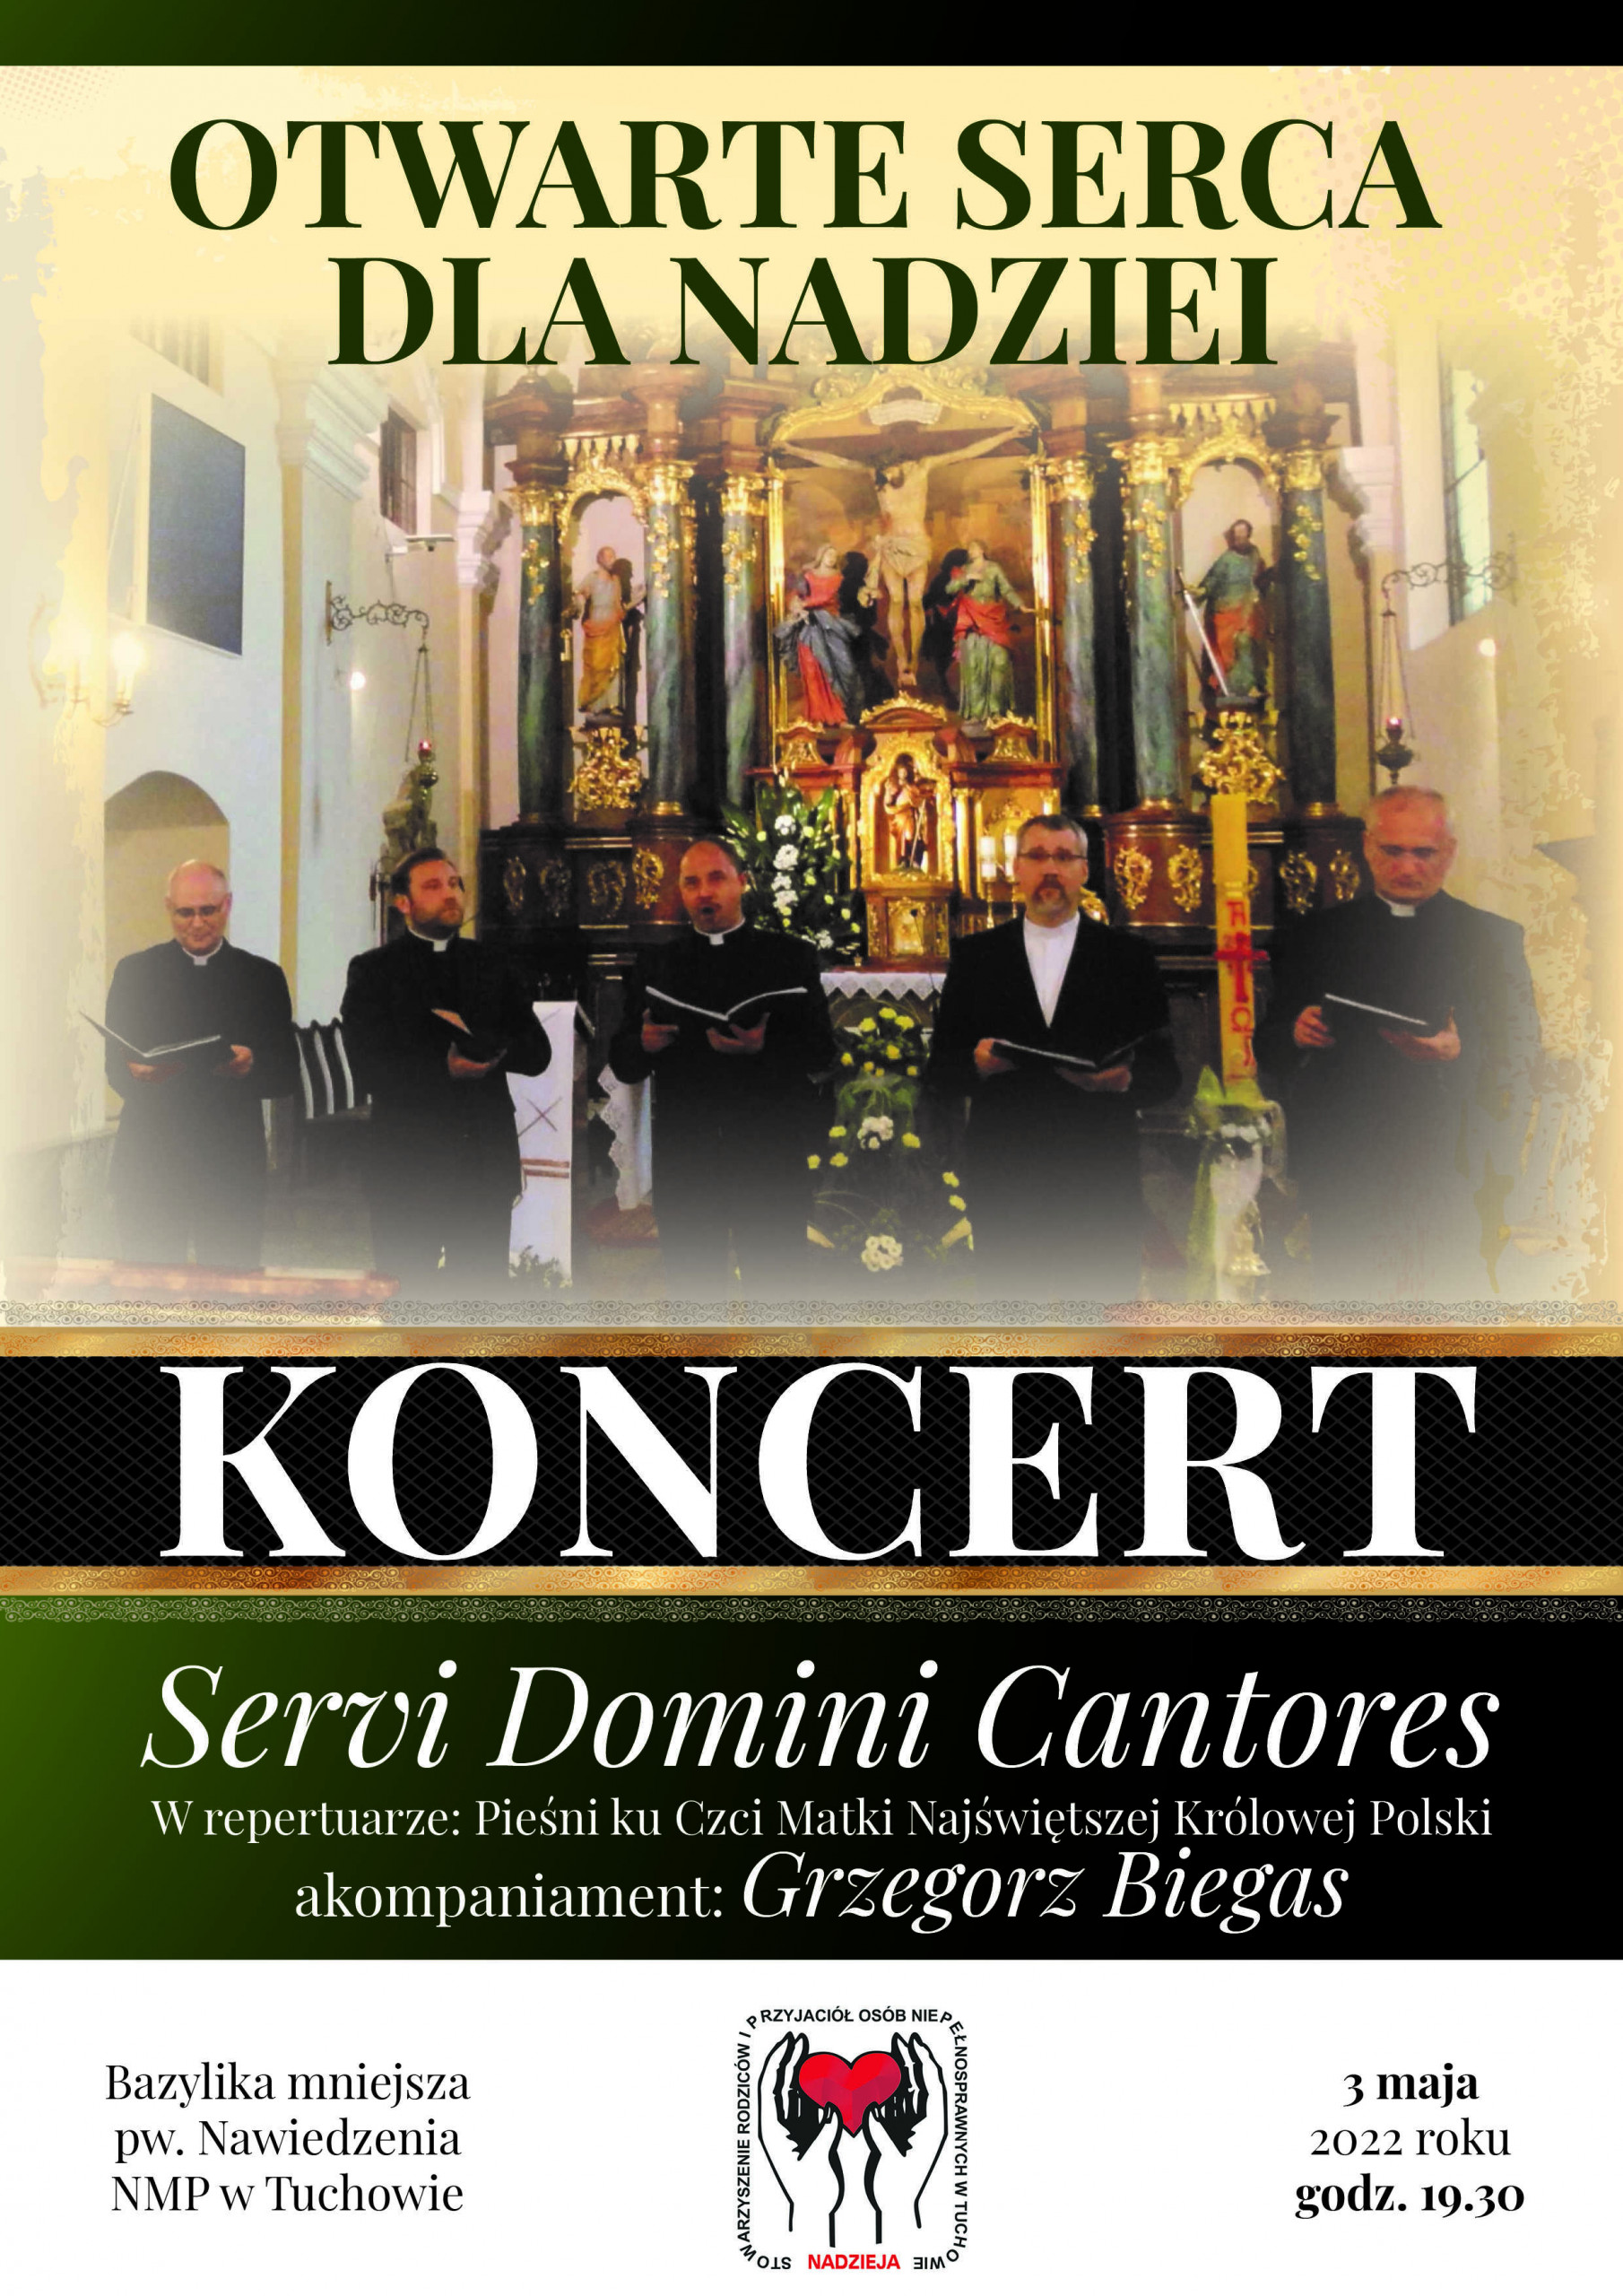 Koncert Servi Domini Cantores